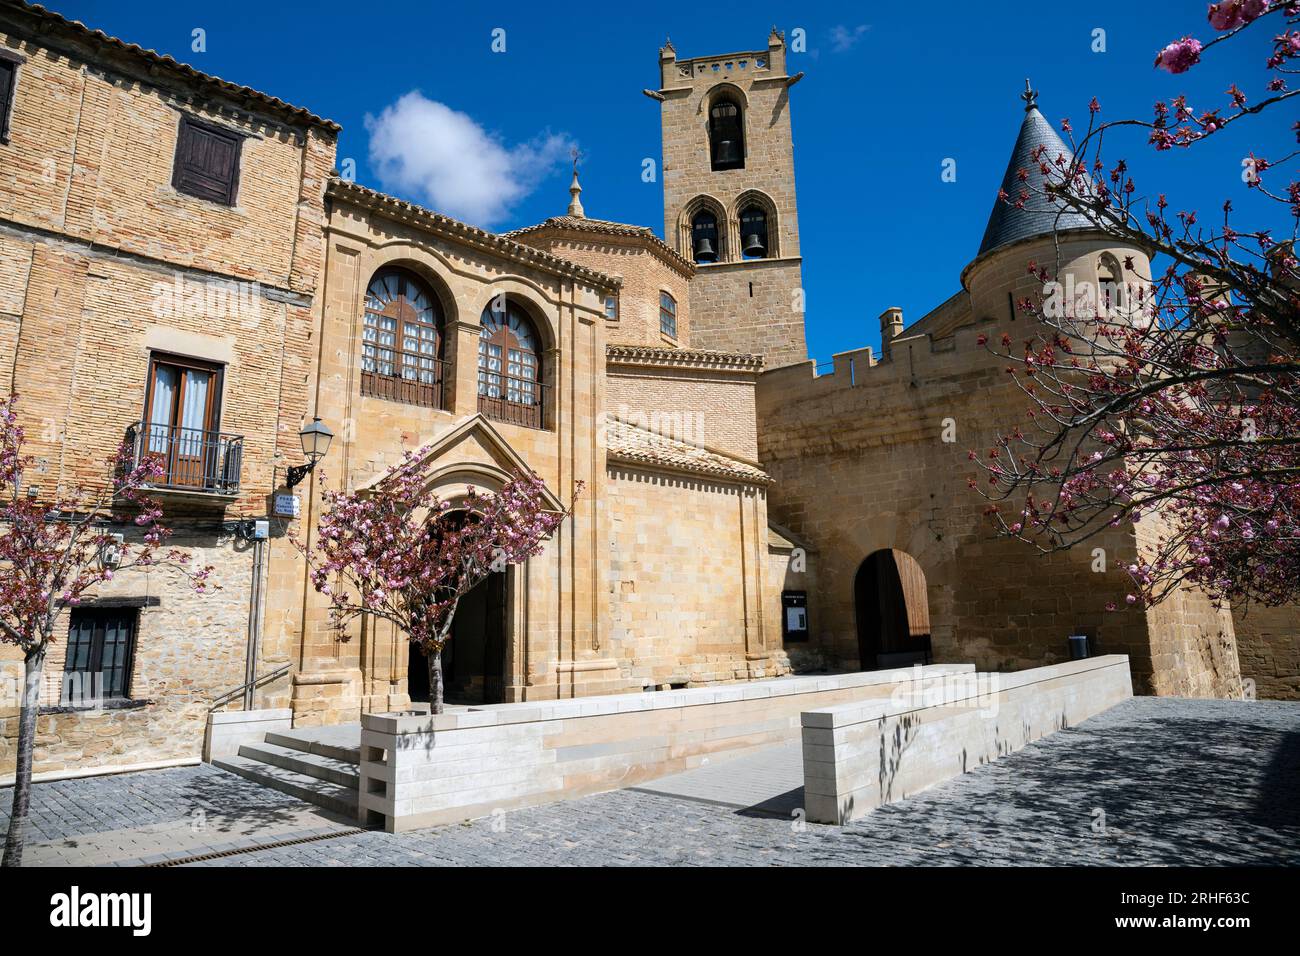 Europa, Spagna, Navarra, Olite, il Palazzo reale di Olite (Palacio Real de Olite) e la Iglesia de Santa Maria la Real (Chiesa) Foto Stock